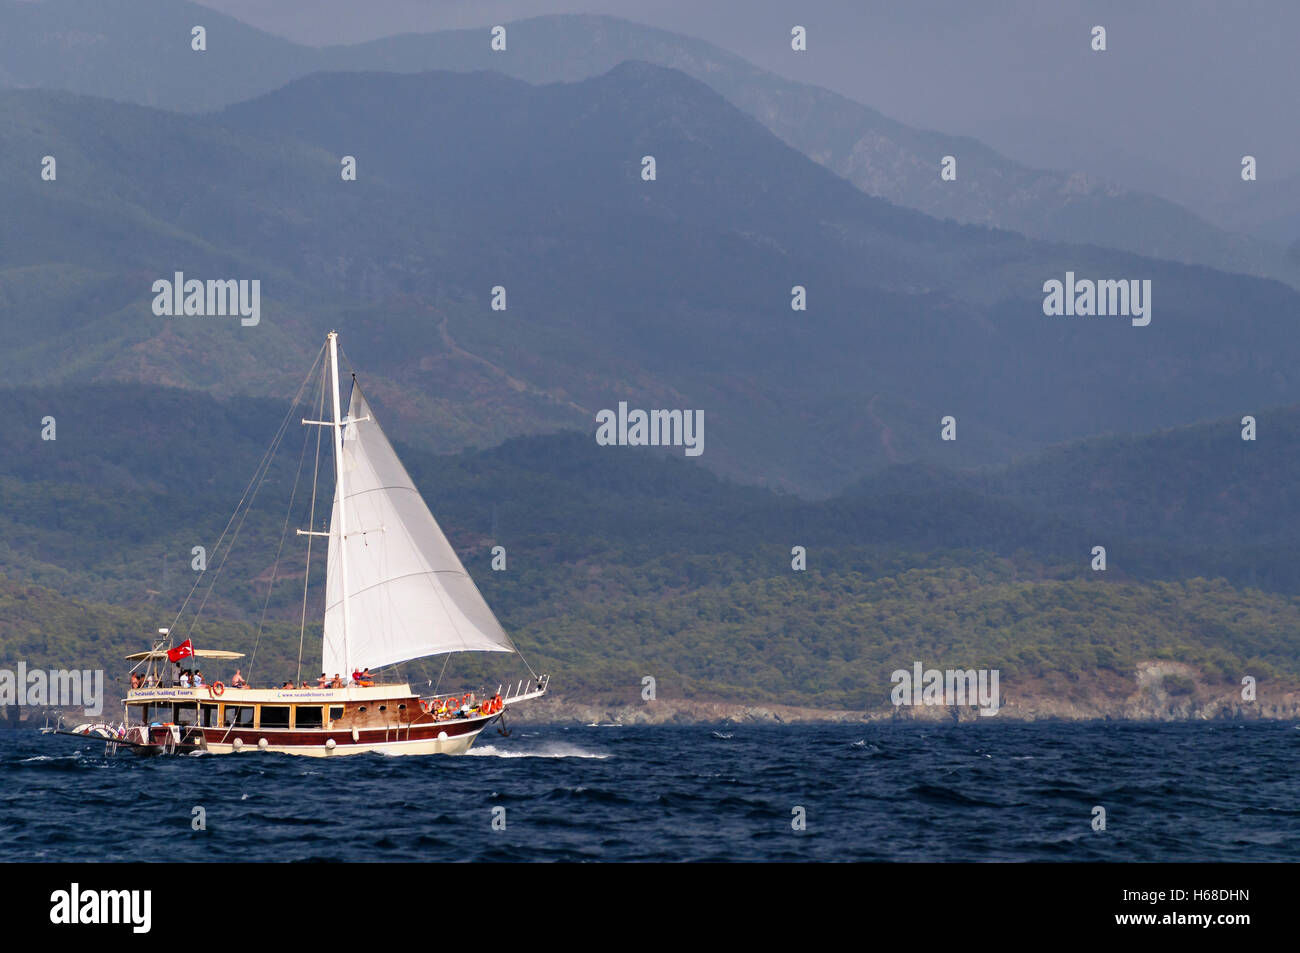 Eine Segelschiff hat seine Fock entfaltet, als es eine Bucht in der Türkei überquert. Stockfoto